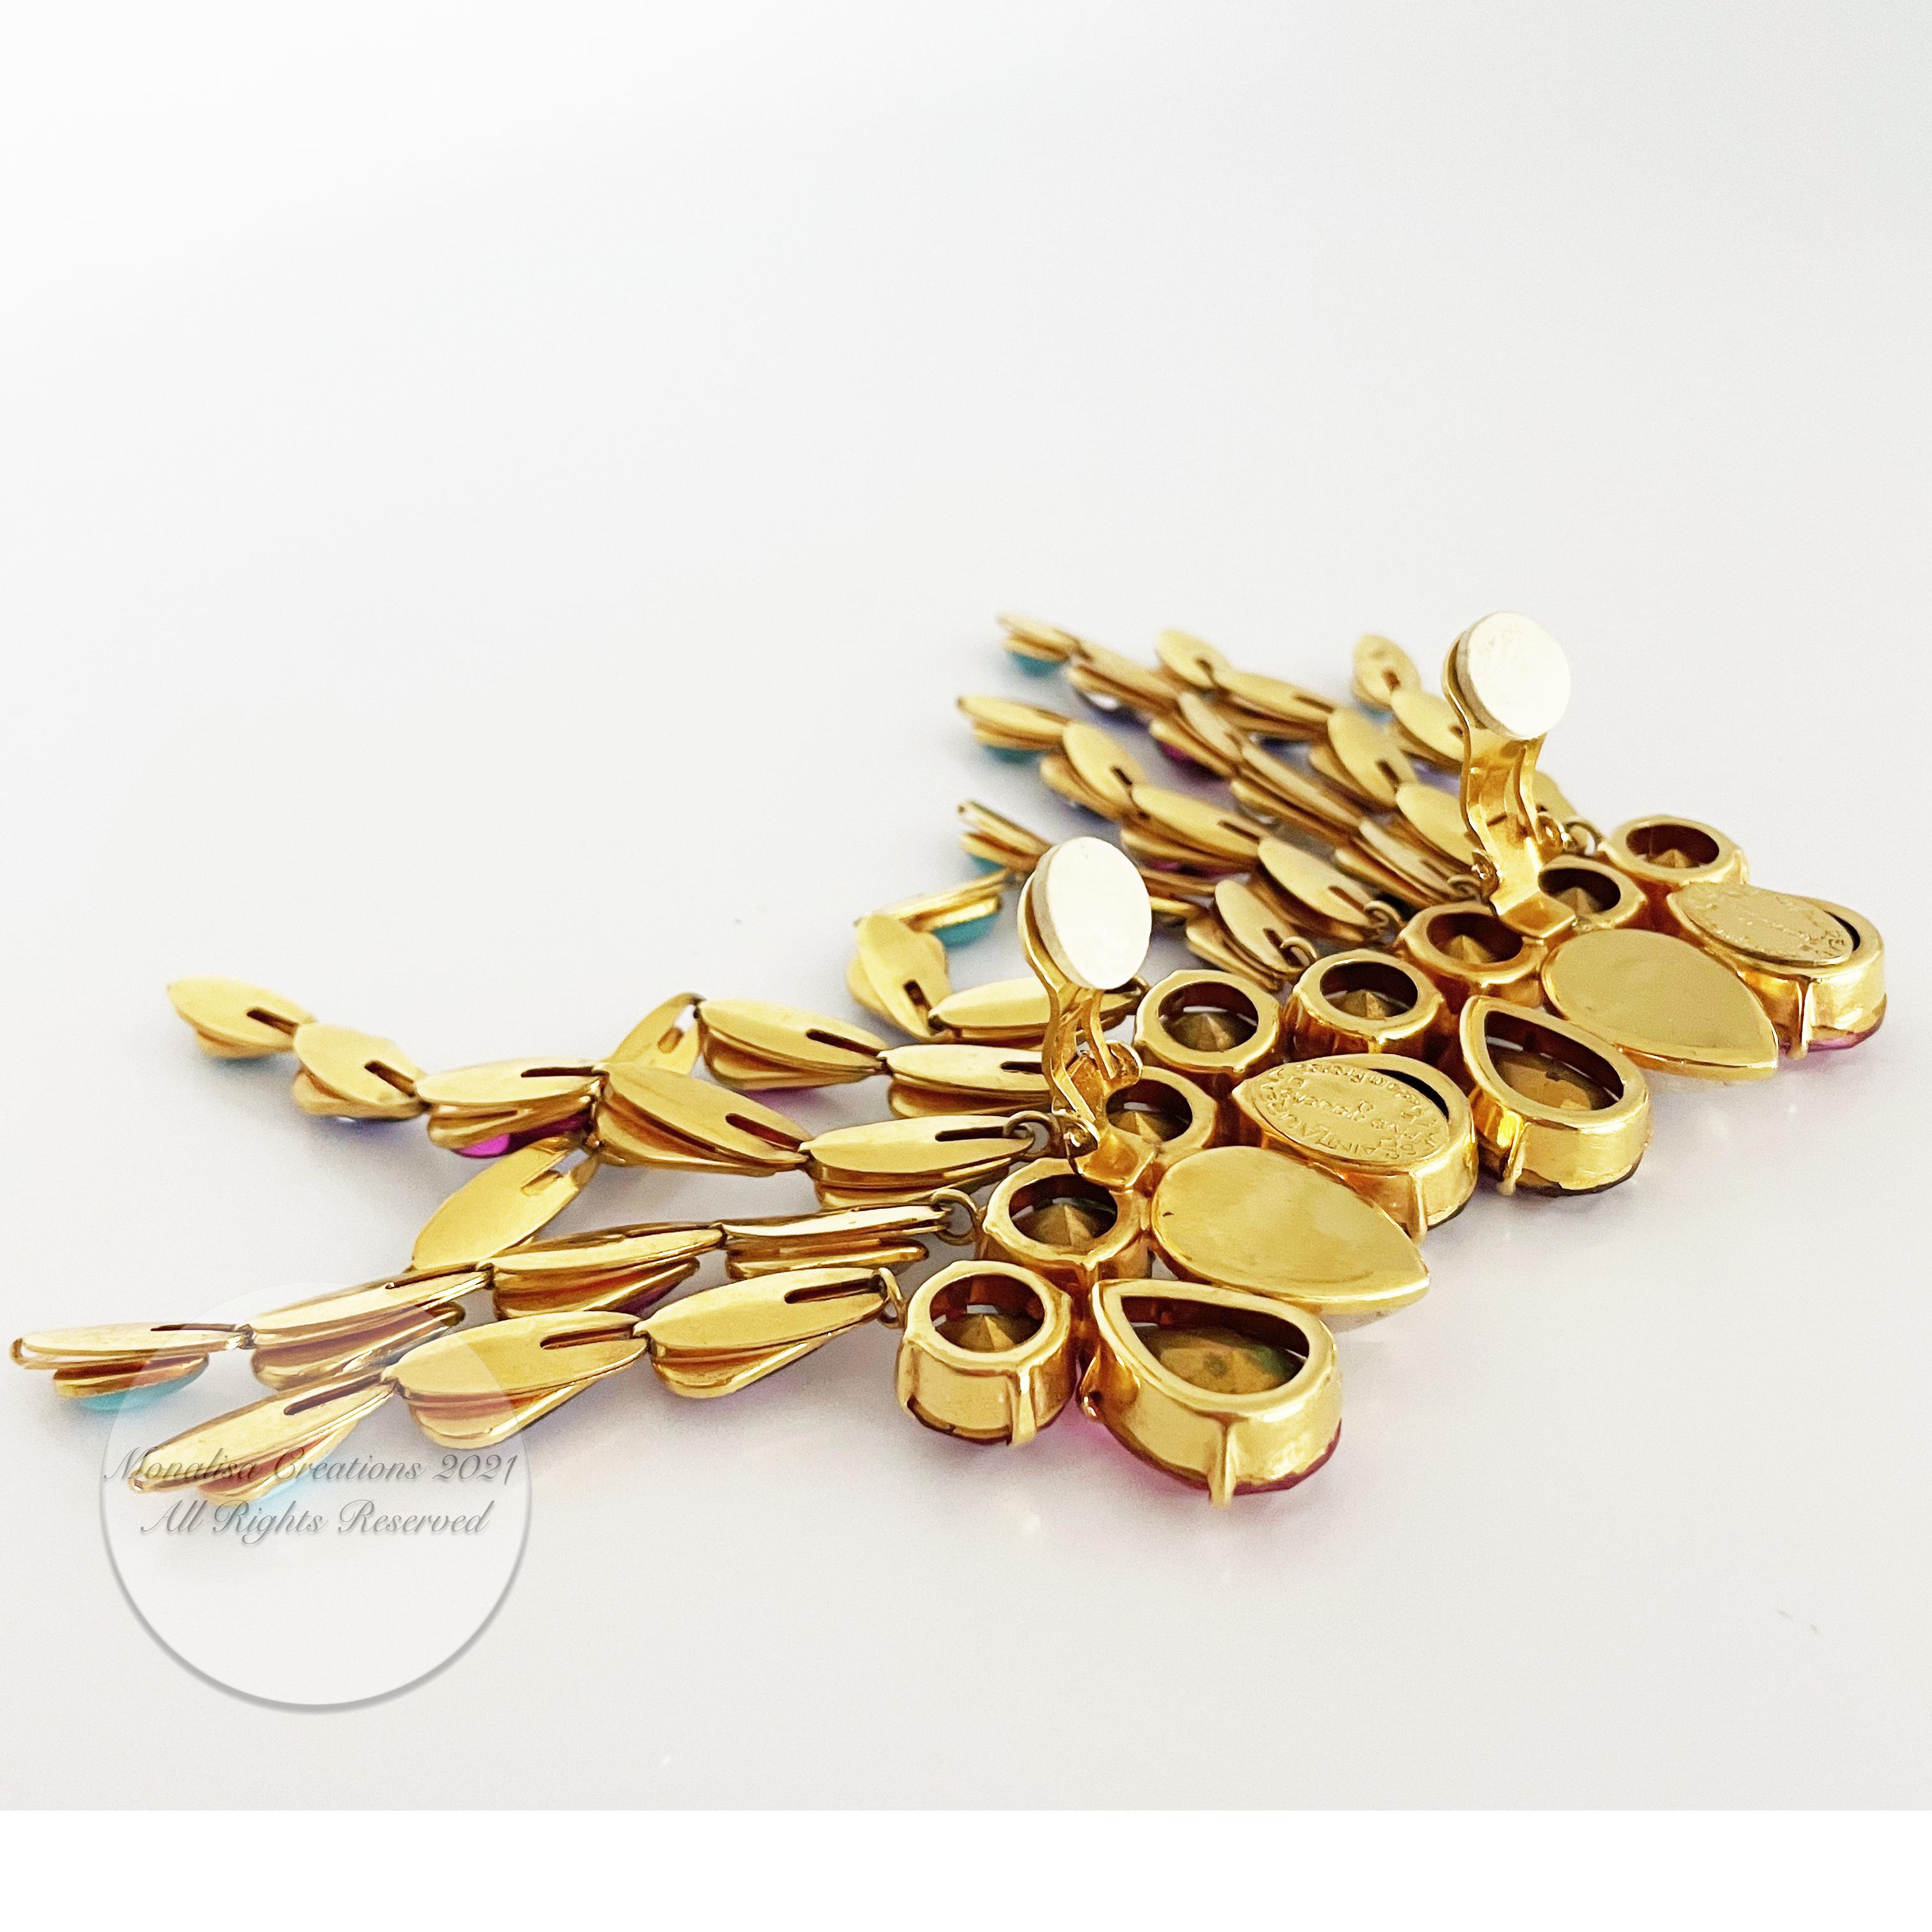 Yves Saint Laurent Statement Earrings Massive Chandelier Dangles Vintage Rare 10